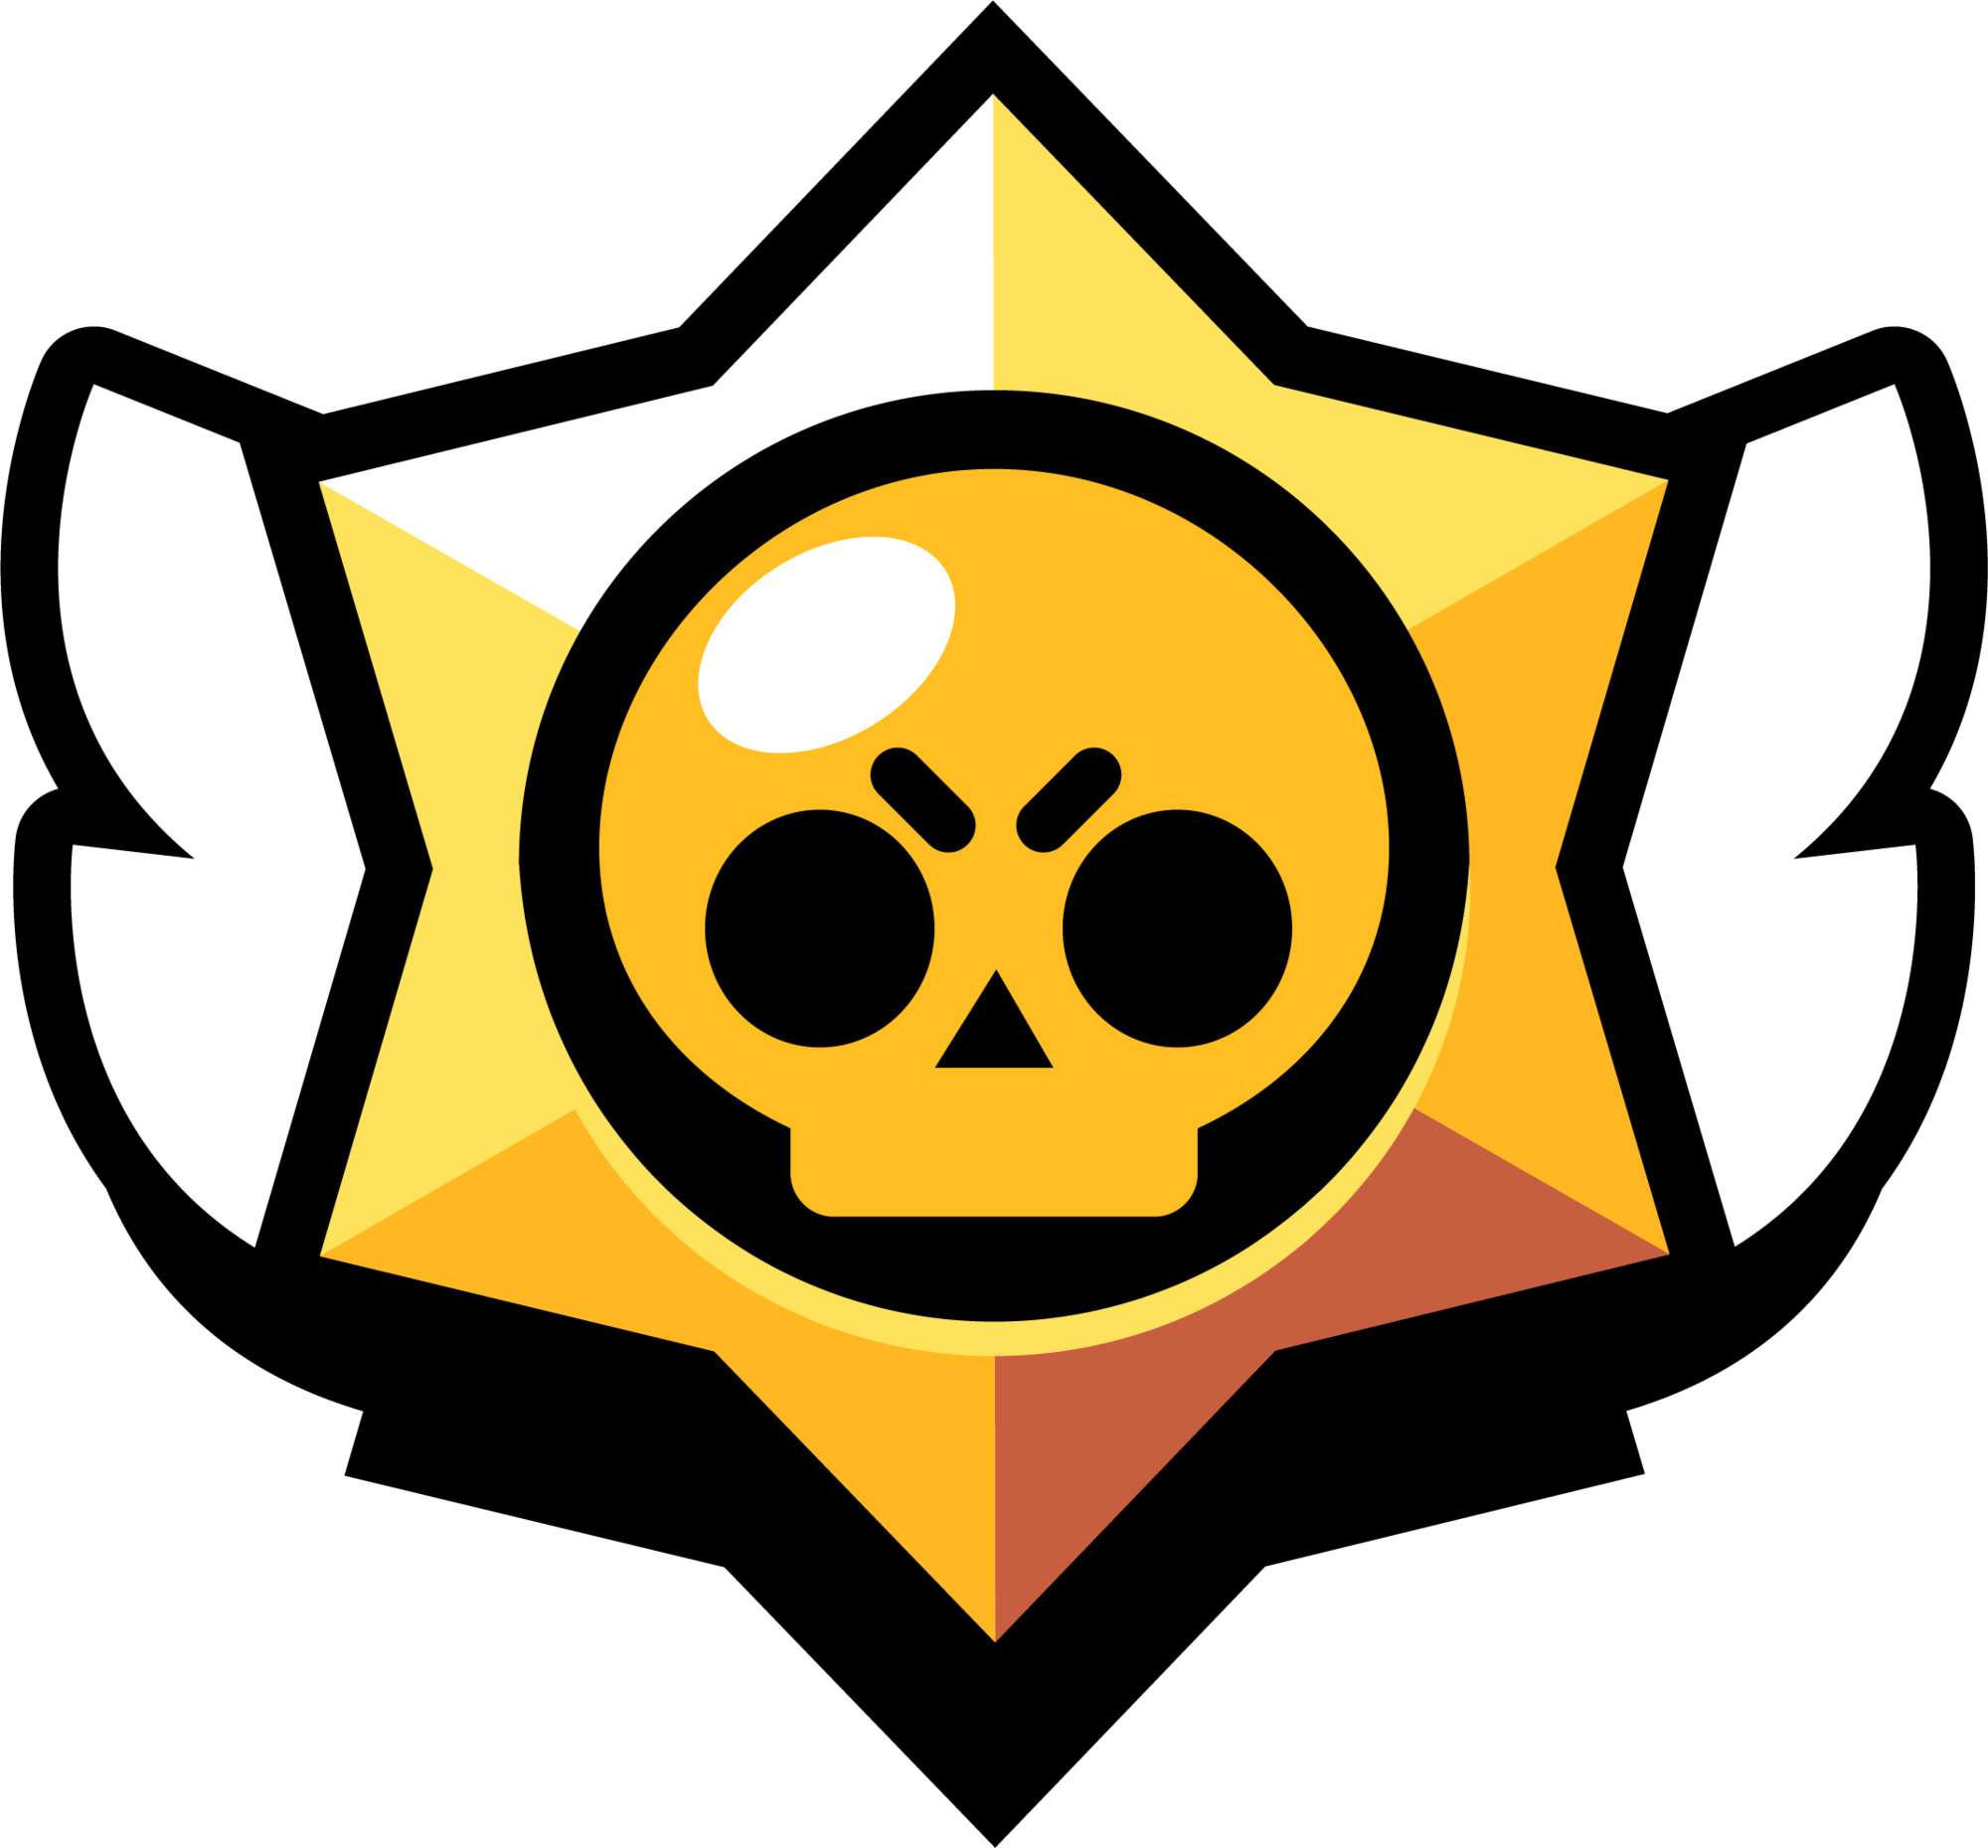 logotipo del juego, un escudo en forma de estrella con alas y una calabera en el medio